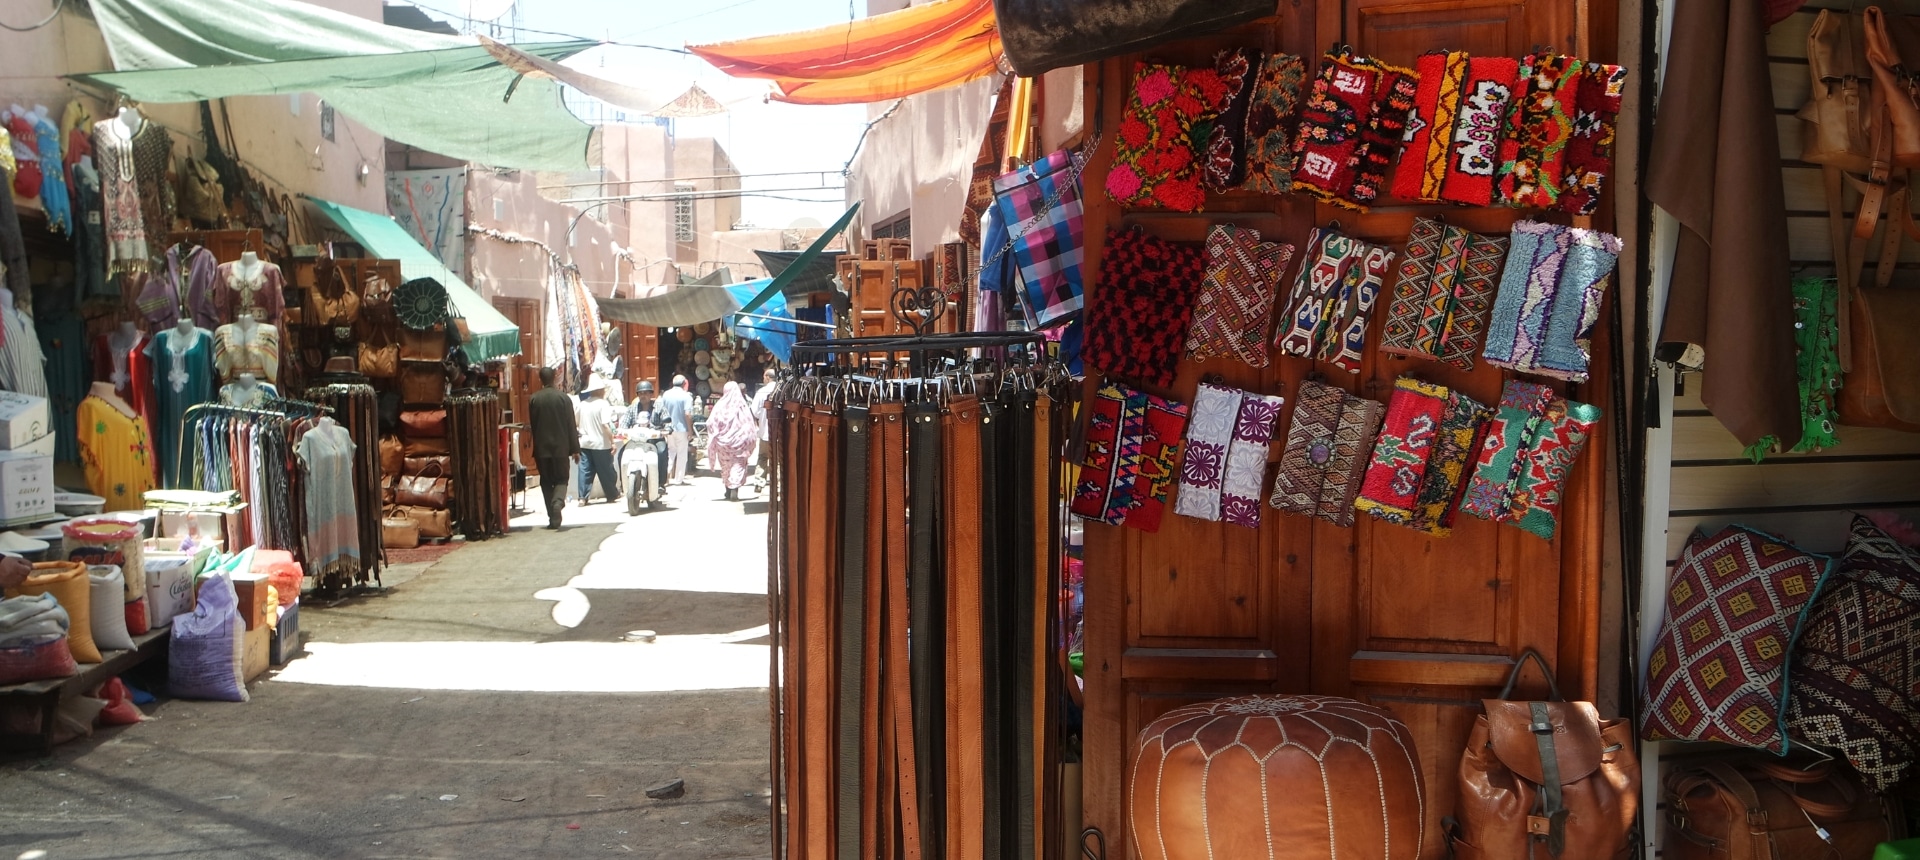 De souks van Marrakech bezoeken: wat te verwachten